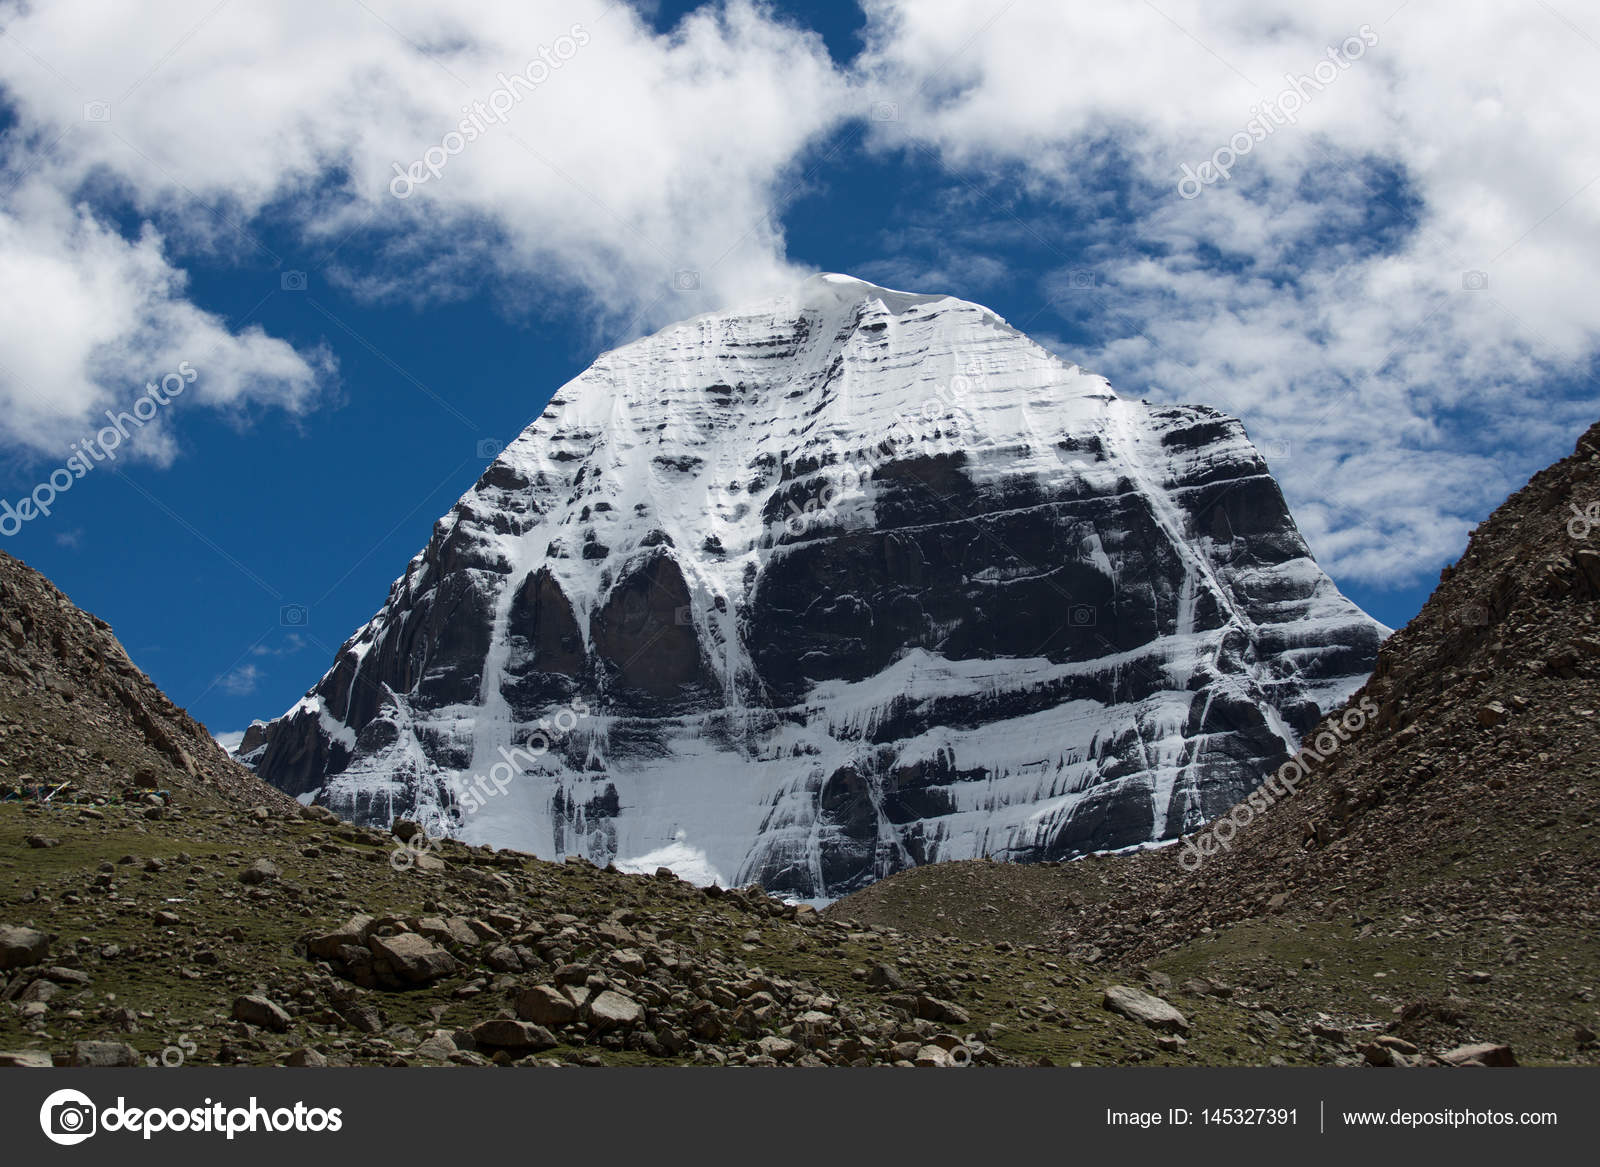 Kailash Parvat Wallpaper Desktop / 1080p Kailash Mountain Hd Wallpaper - Free HD Wallpaper : We ...